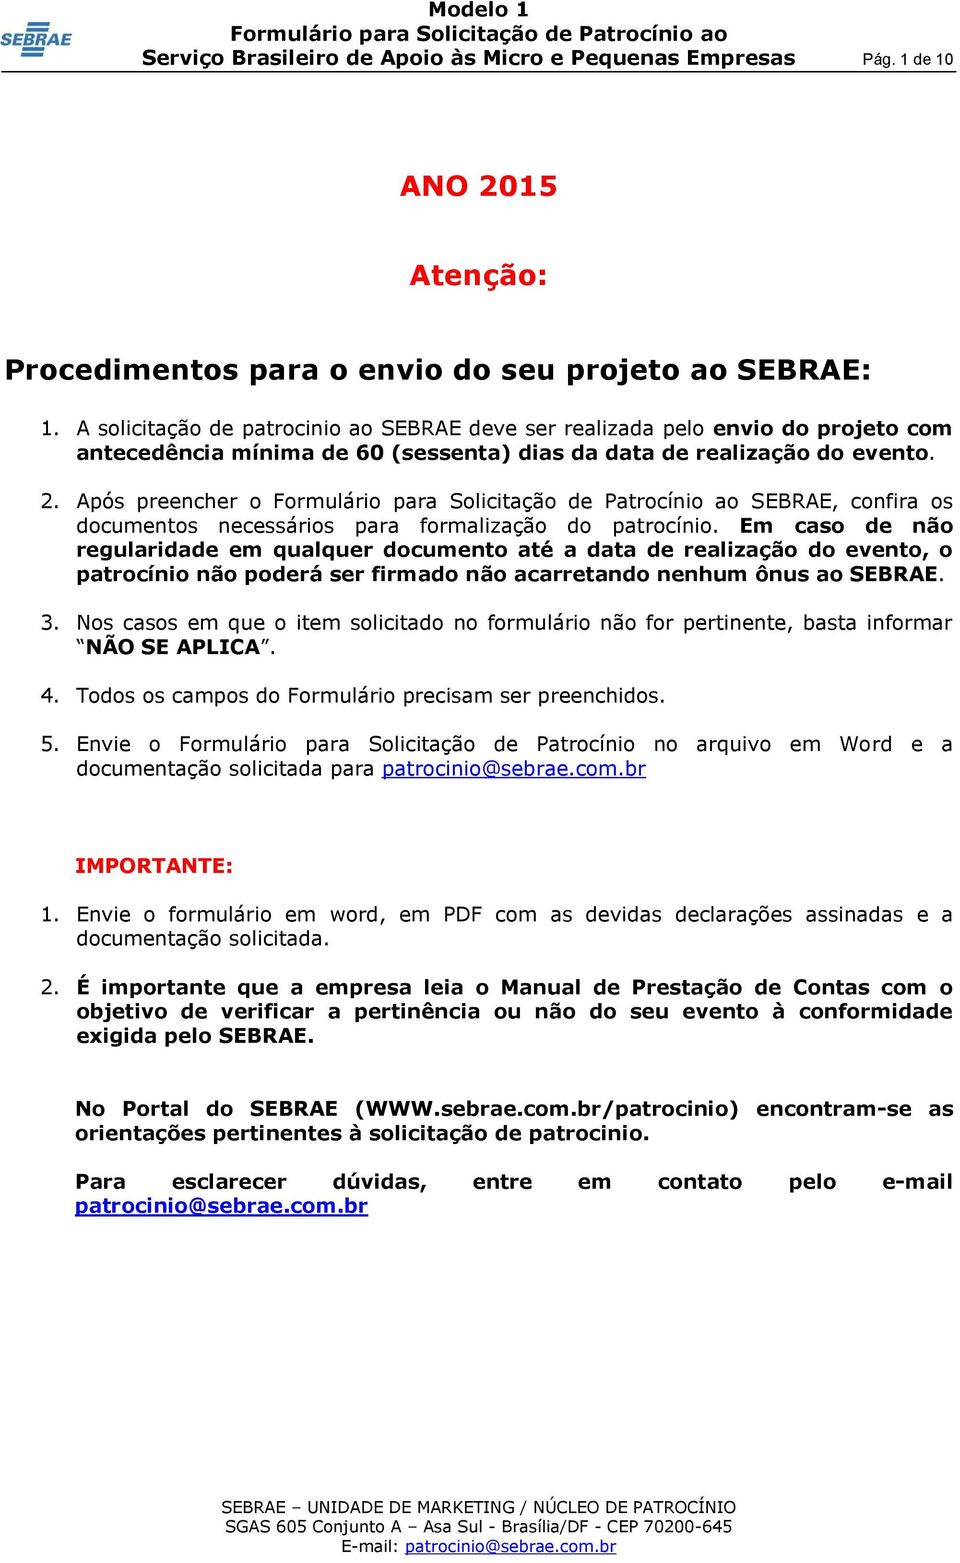 Após preencher o SEBRAE, confira os documentos necessários para formalização do patrocínio.